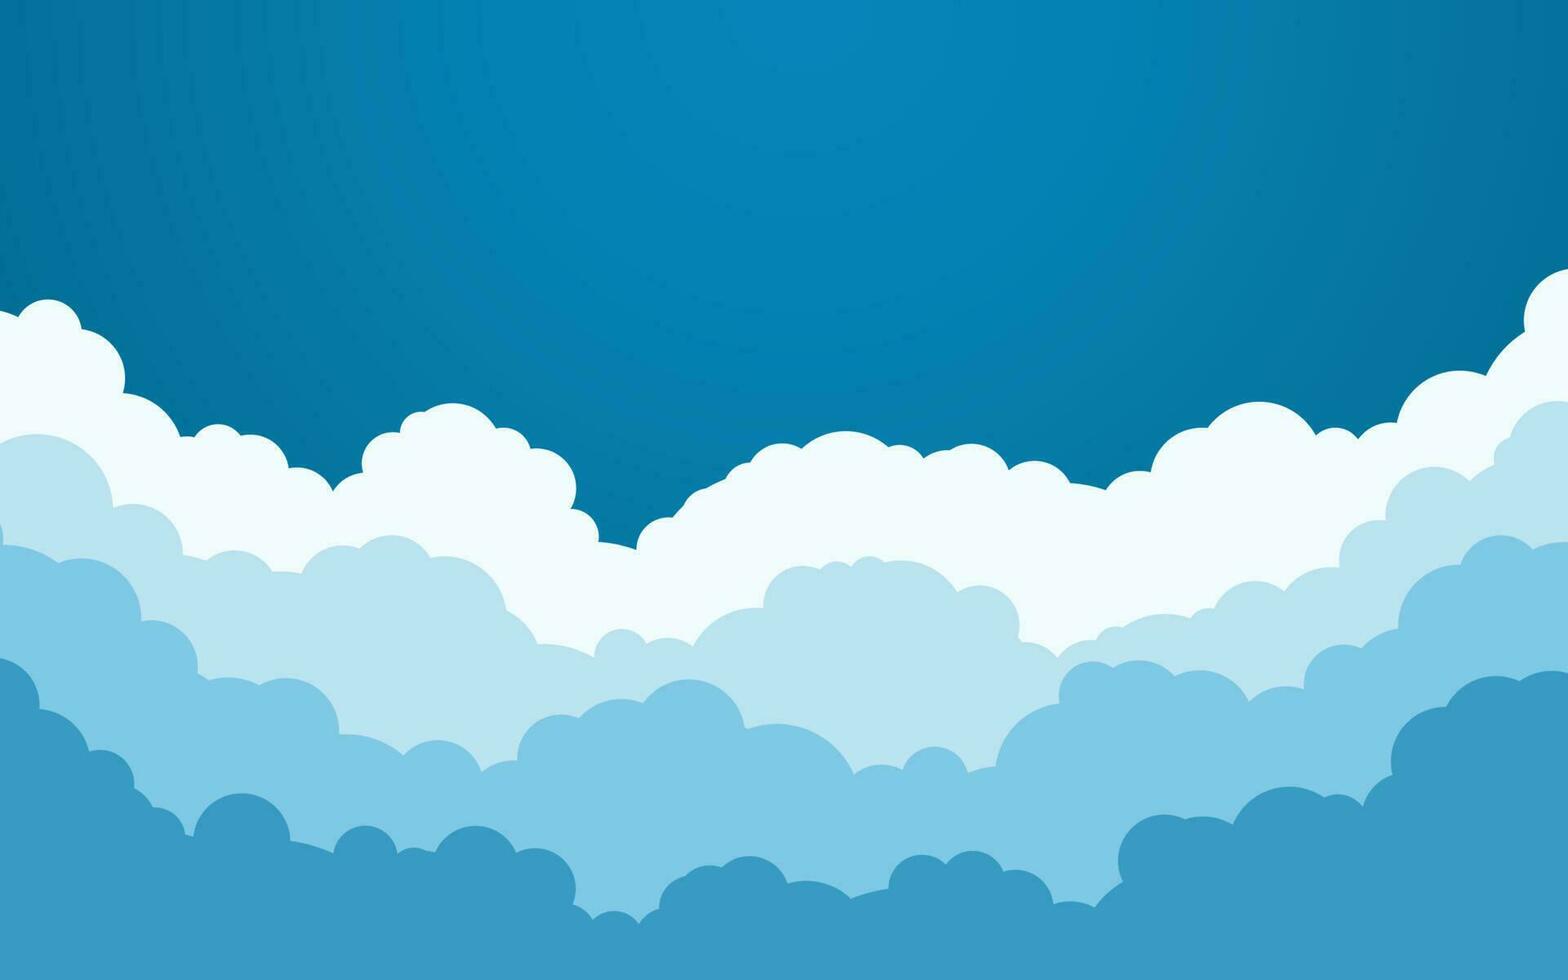 Blau Himmel mit Weiß Wolken Hintergrund. Karikatur eben Stil Design. Vektor Illustration